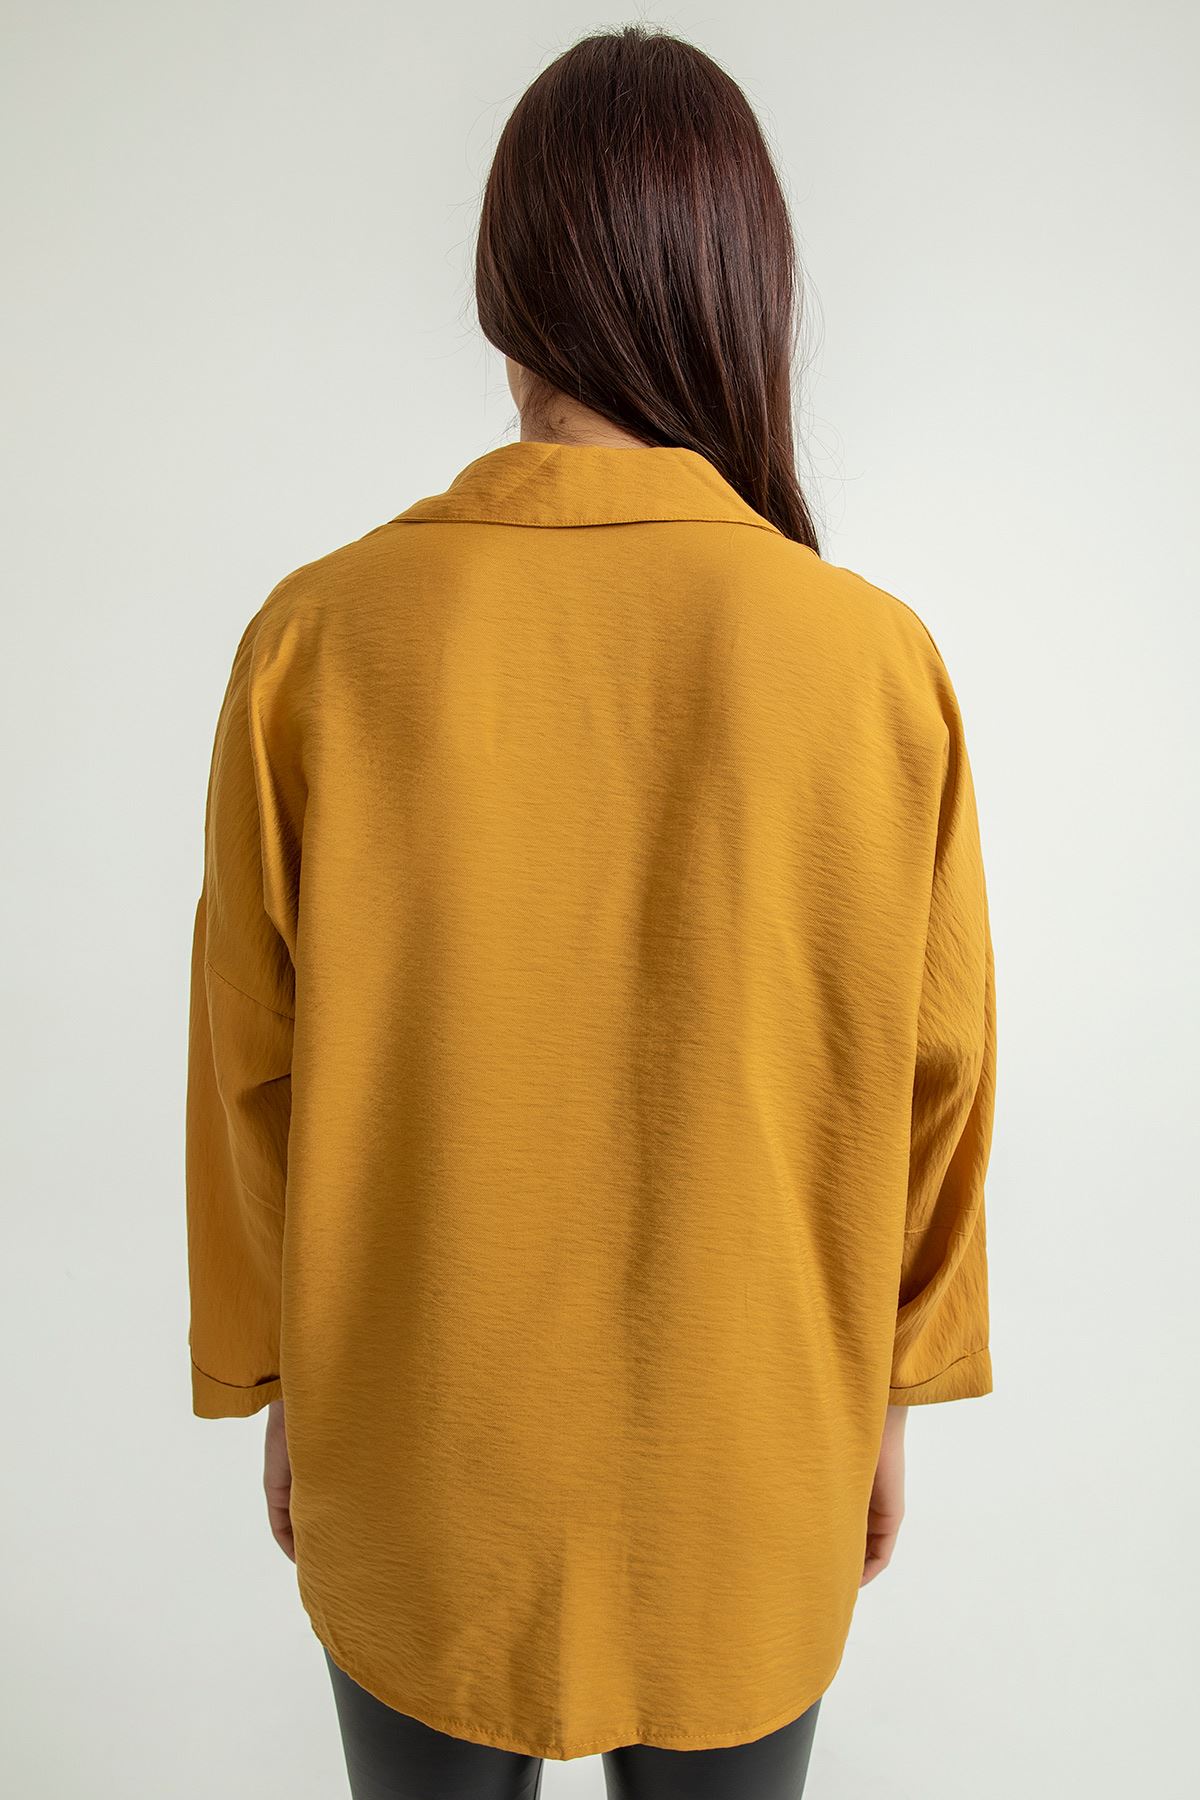 Aerobin Fabric Long Sleeve Shirt Collar Below Hip Oversize Women'S Shirt - Light Brown